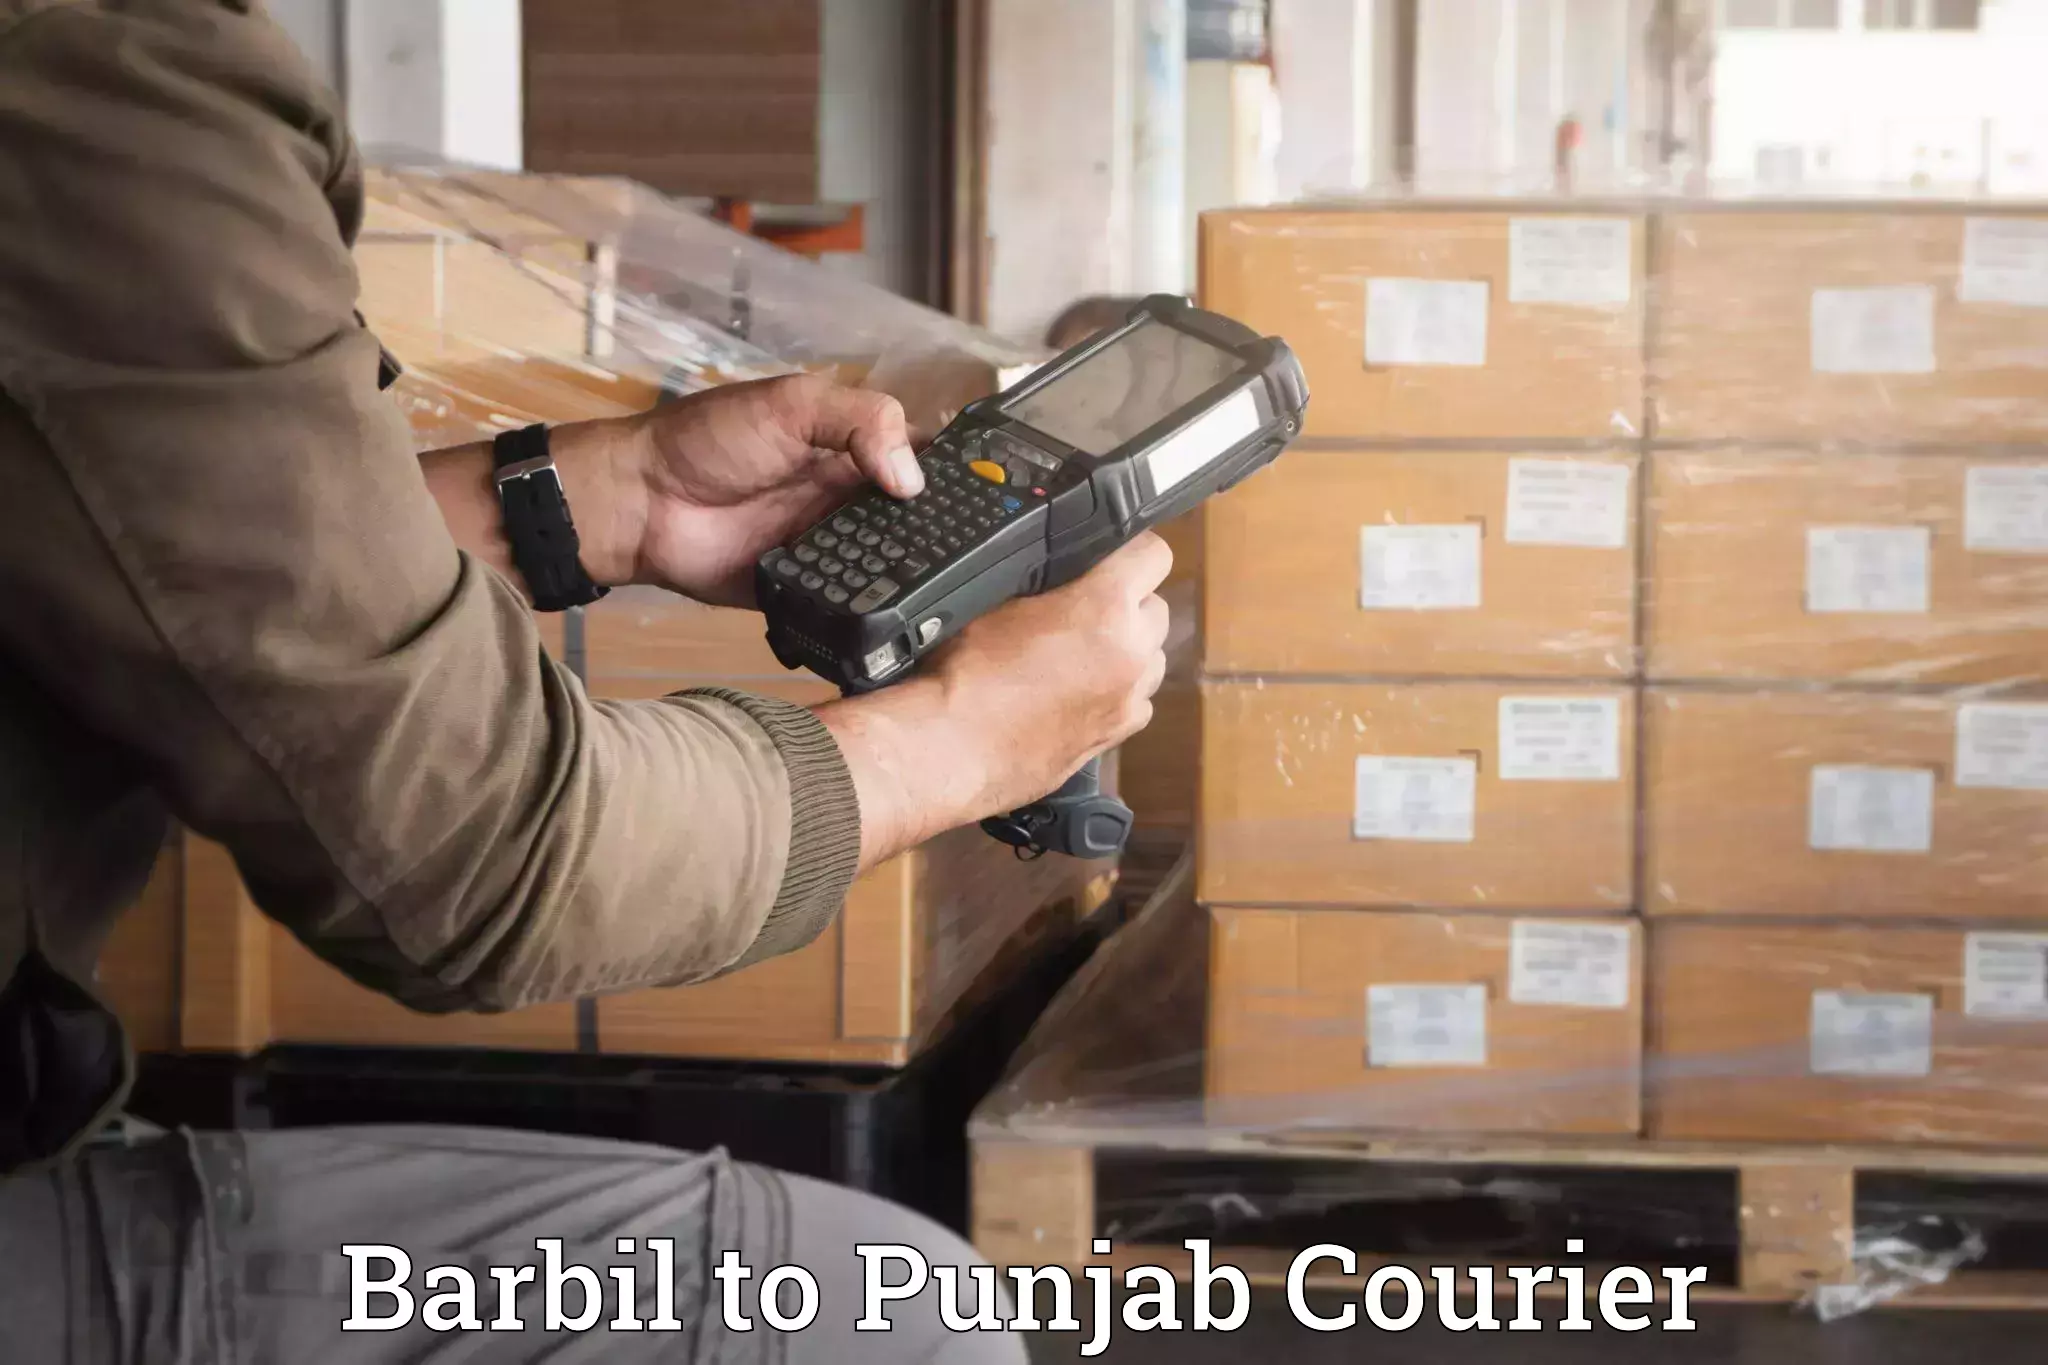 Premium moving services Barbil to Punjab